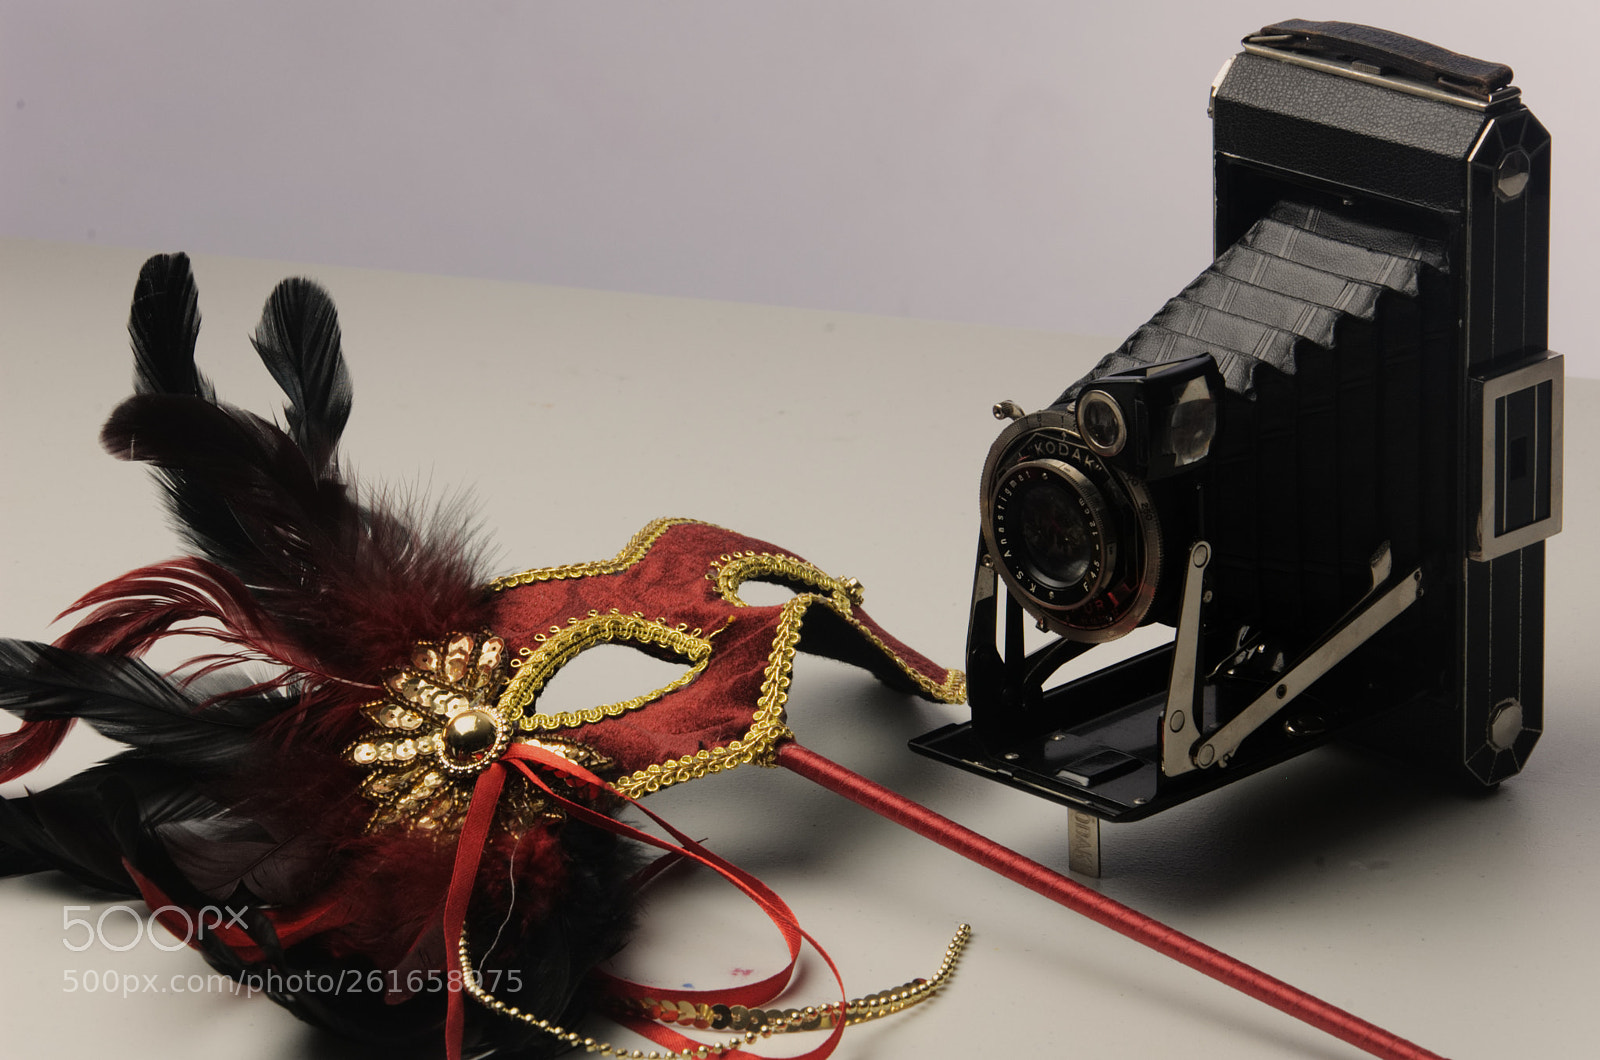 Nikon D40 sample photo. Mask and camera photography